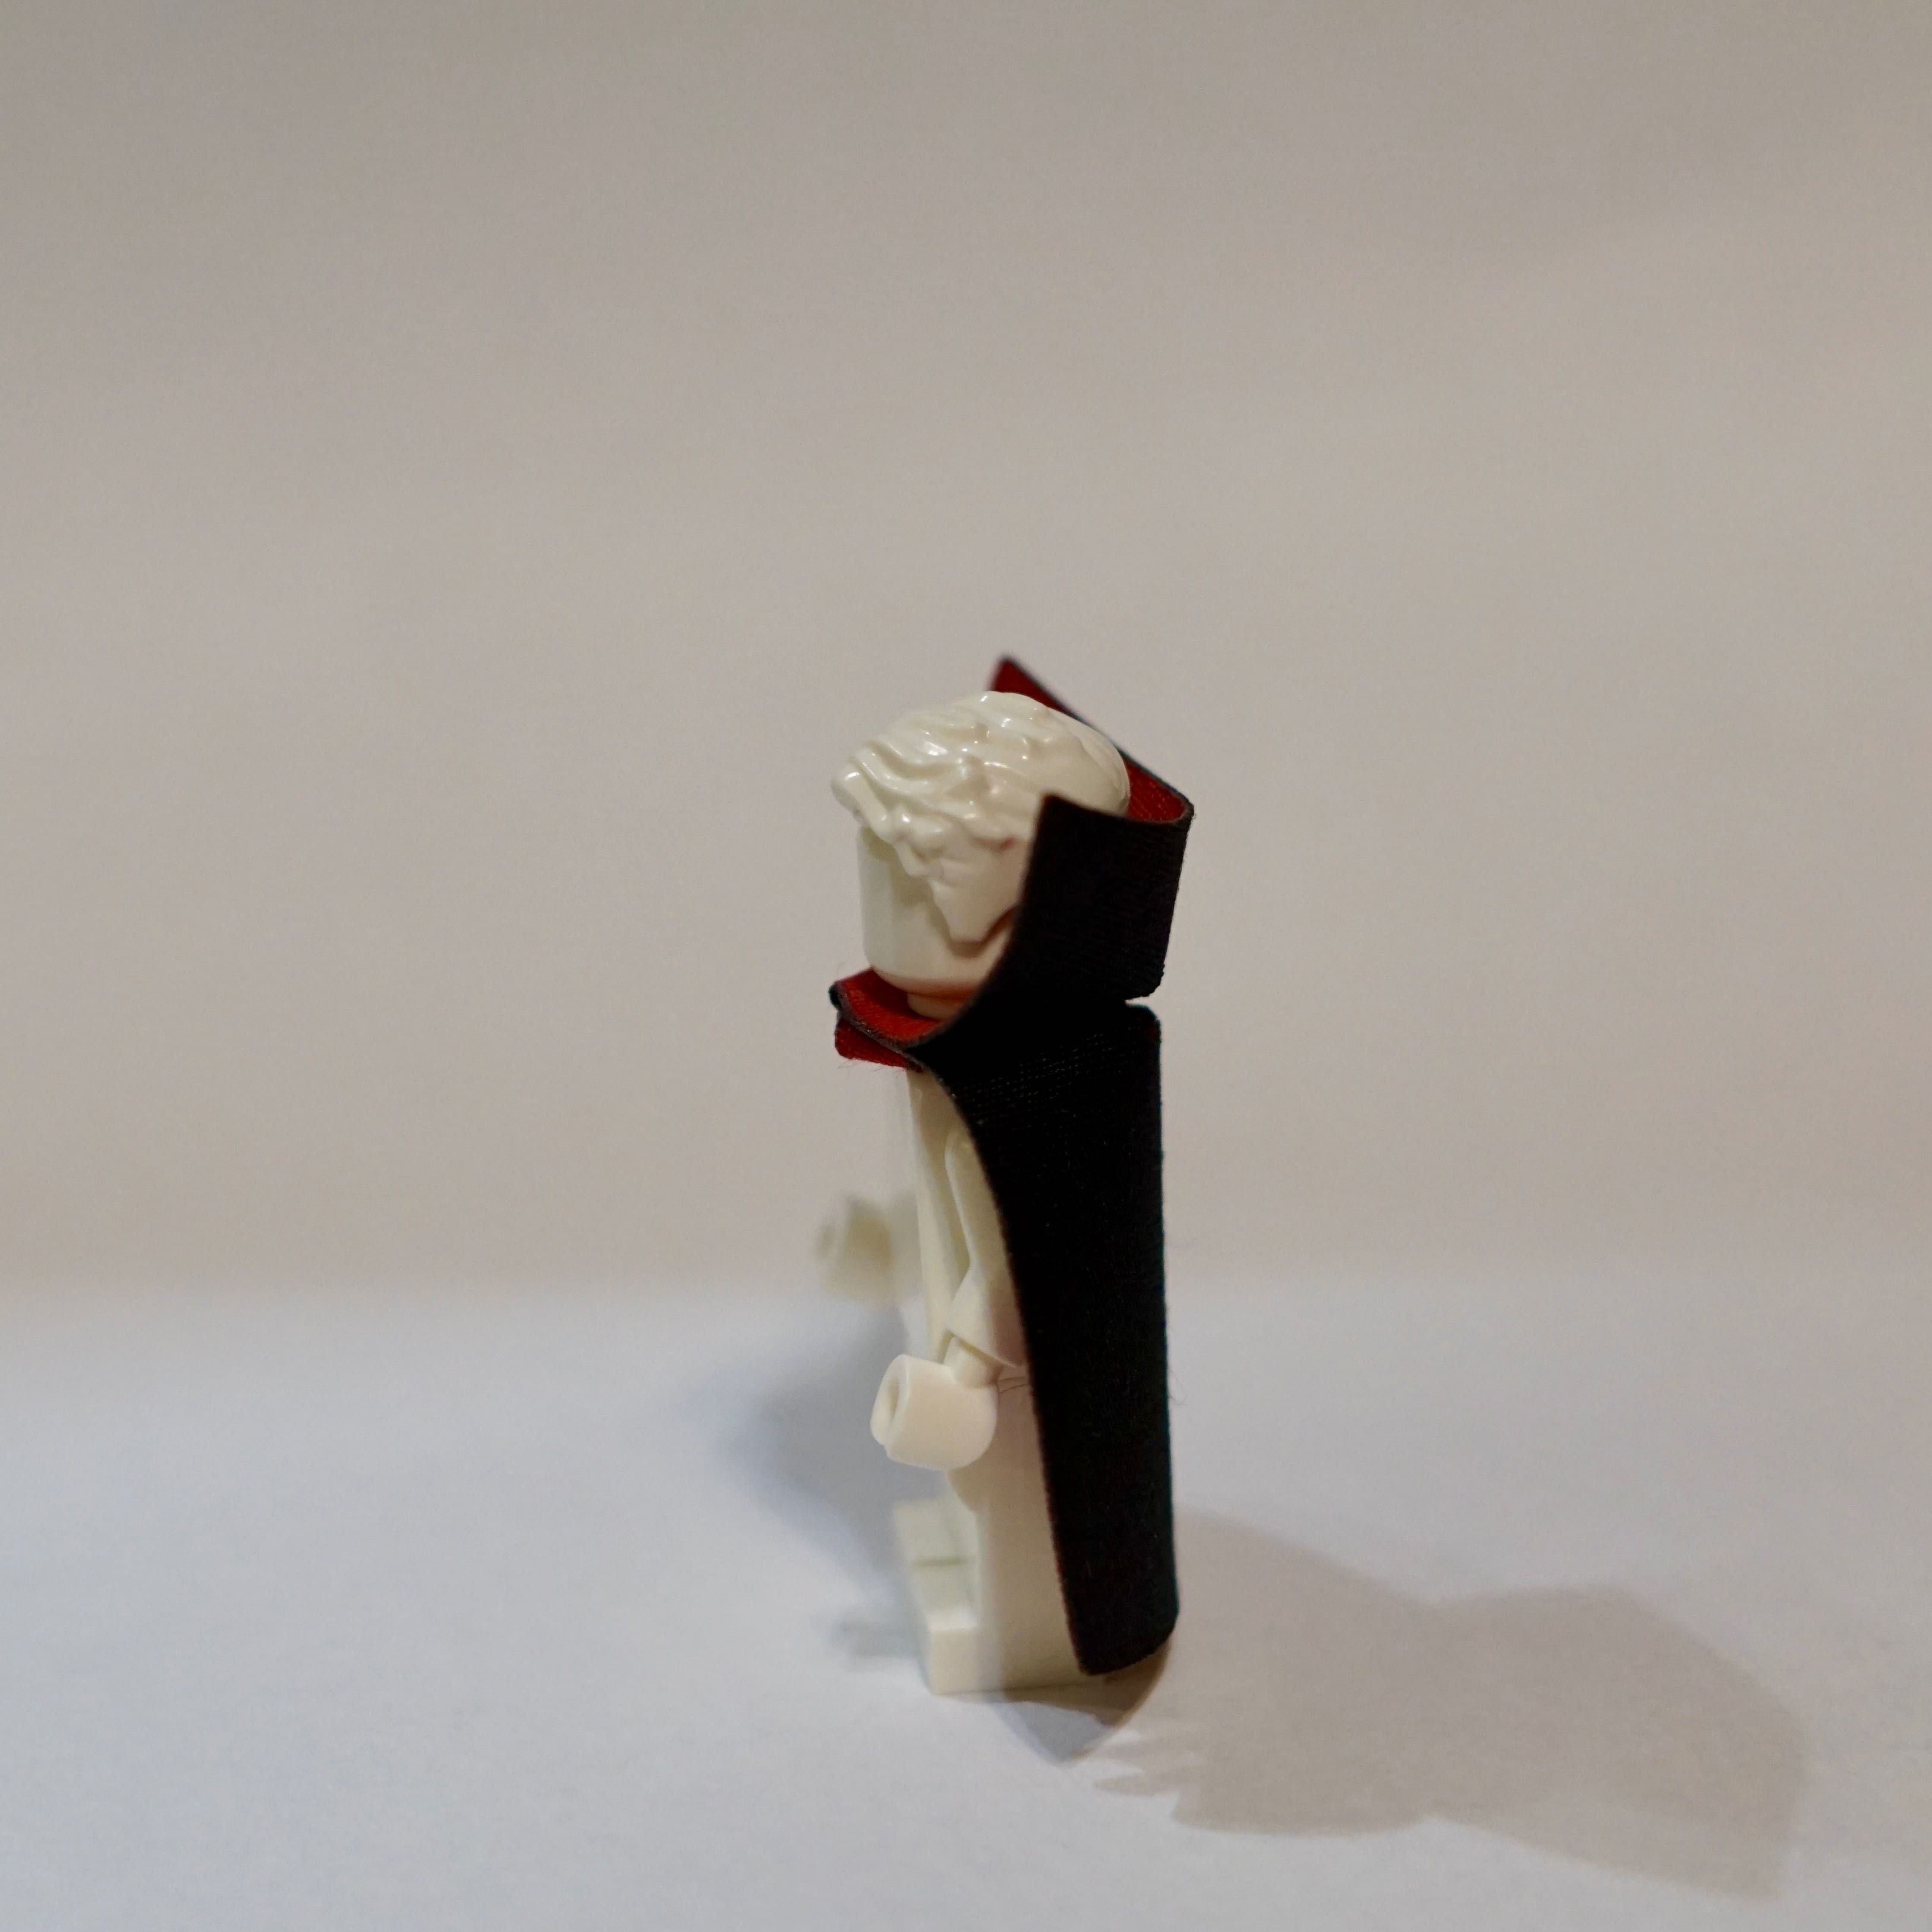 Płaszcz czarno-czerwony dla minifigurki kompatybilny z lego